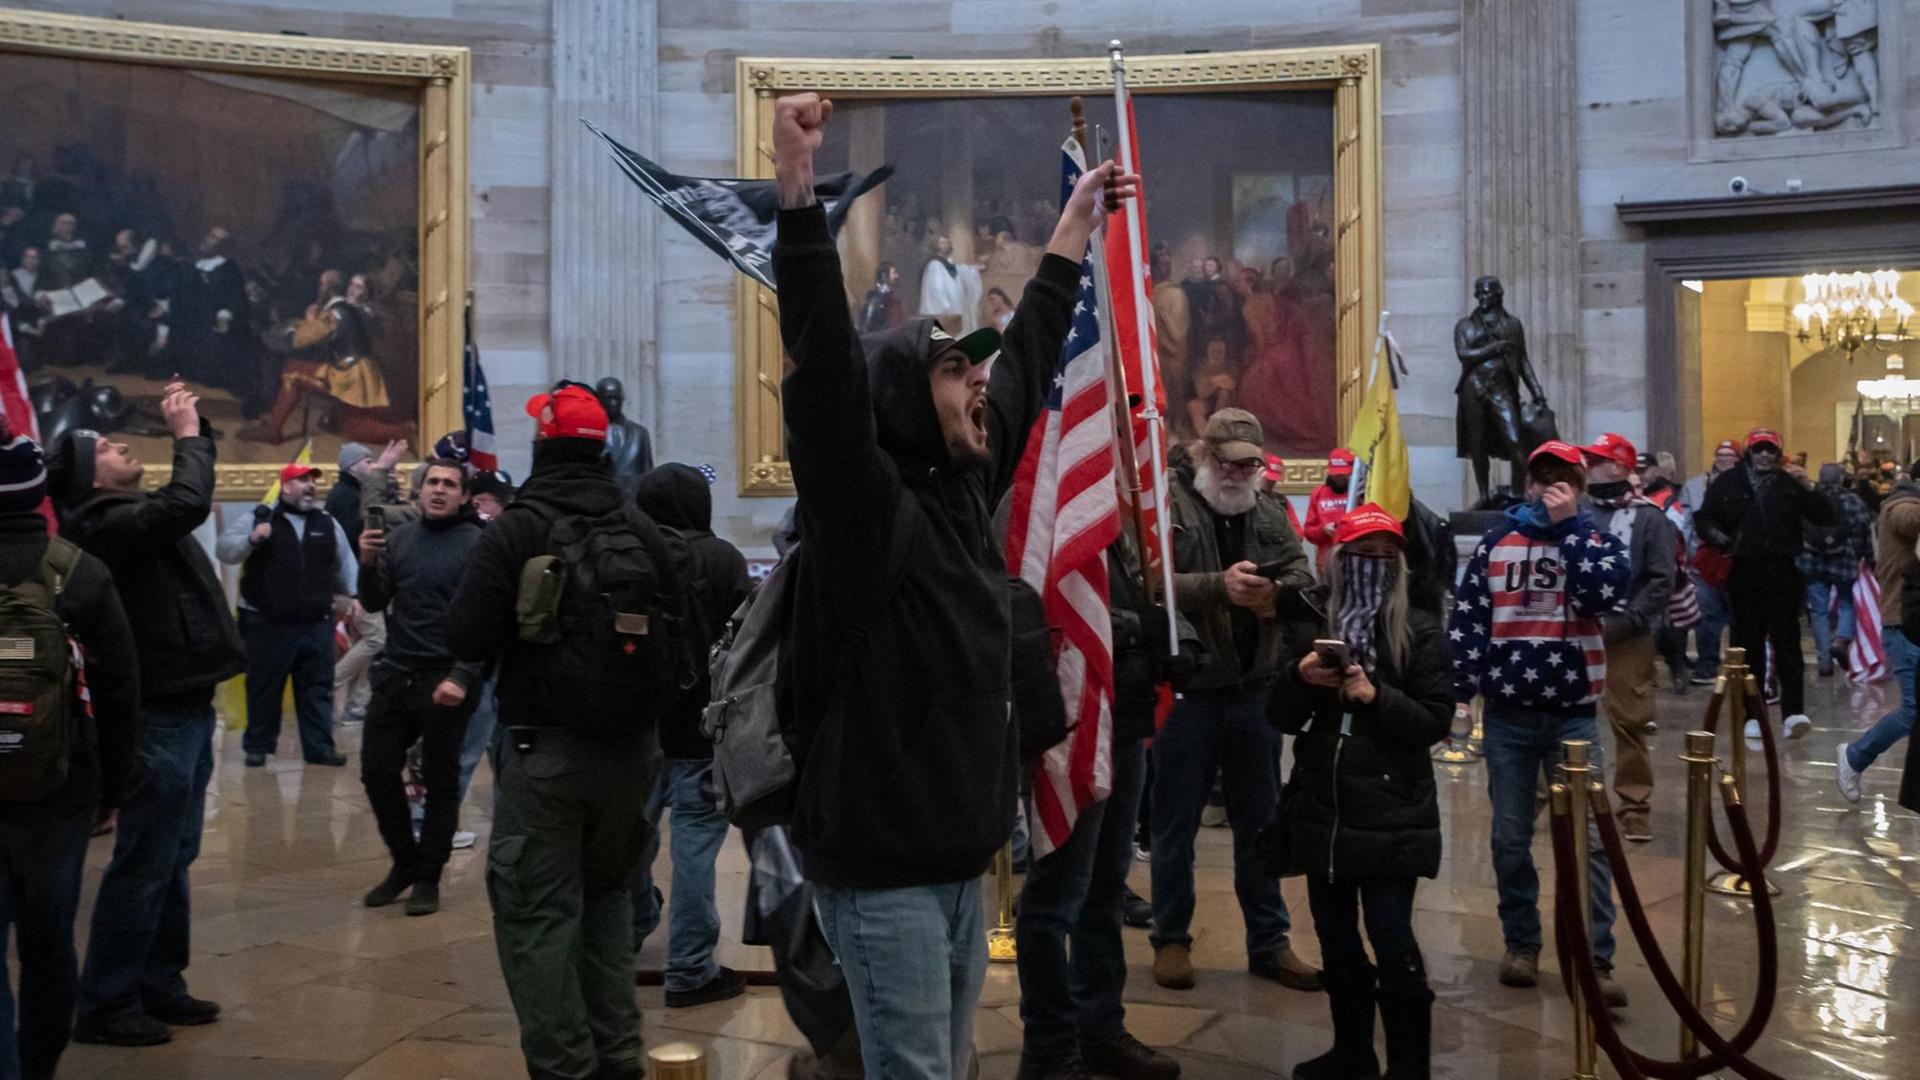 Ein Mob von Trump-Anhängern läuft durch eine Halle im Kapitol. Ein Mann in der Mitte hebt triumphierend die Arme.